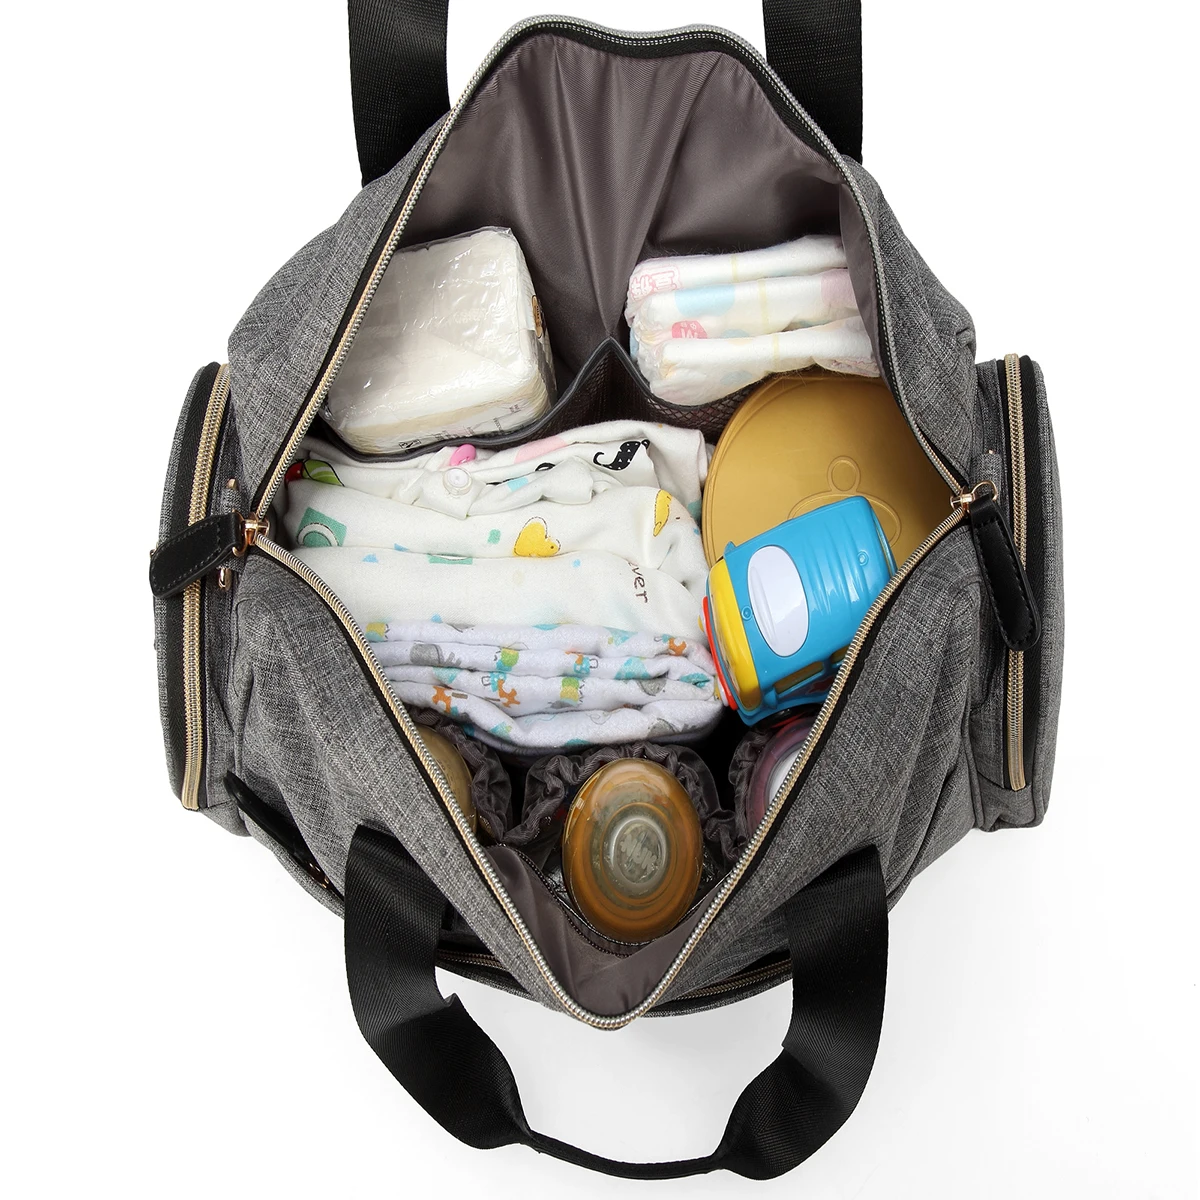 2018 Детские коляски, пеленки для беременных сумка подгузник Путешествия Рюкзак Для мамы/папы большой colorland плеча высокой емкости диагональ